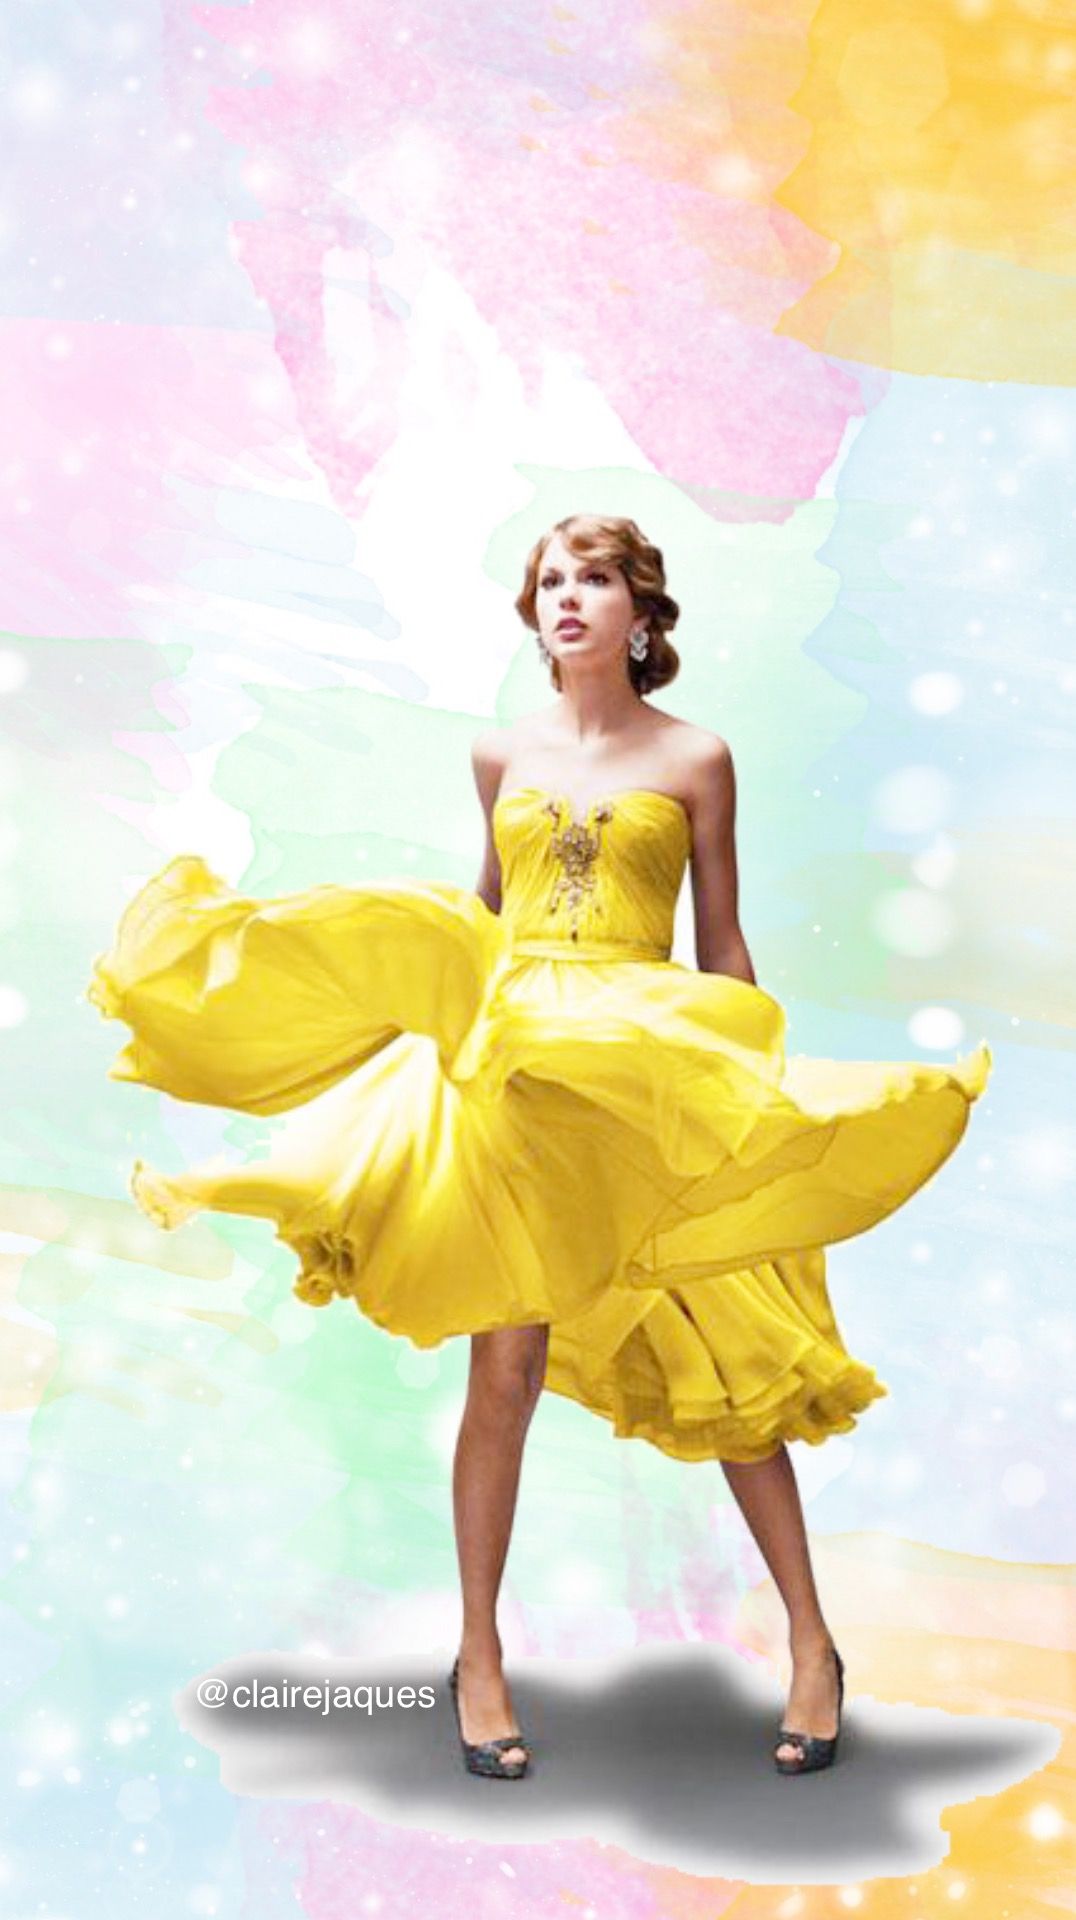 Photoshoot Taylor Swift Speak Now - HD Wallpaper 